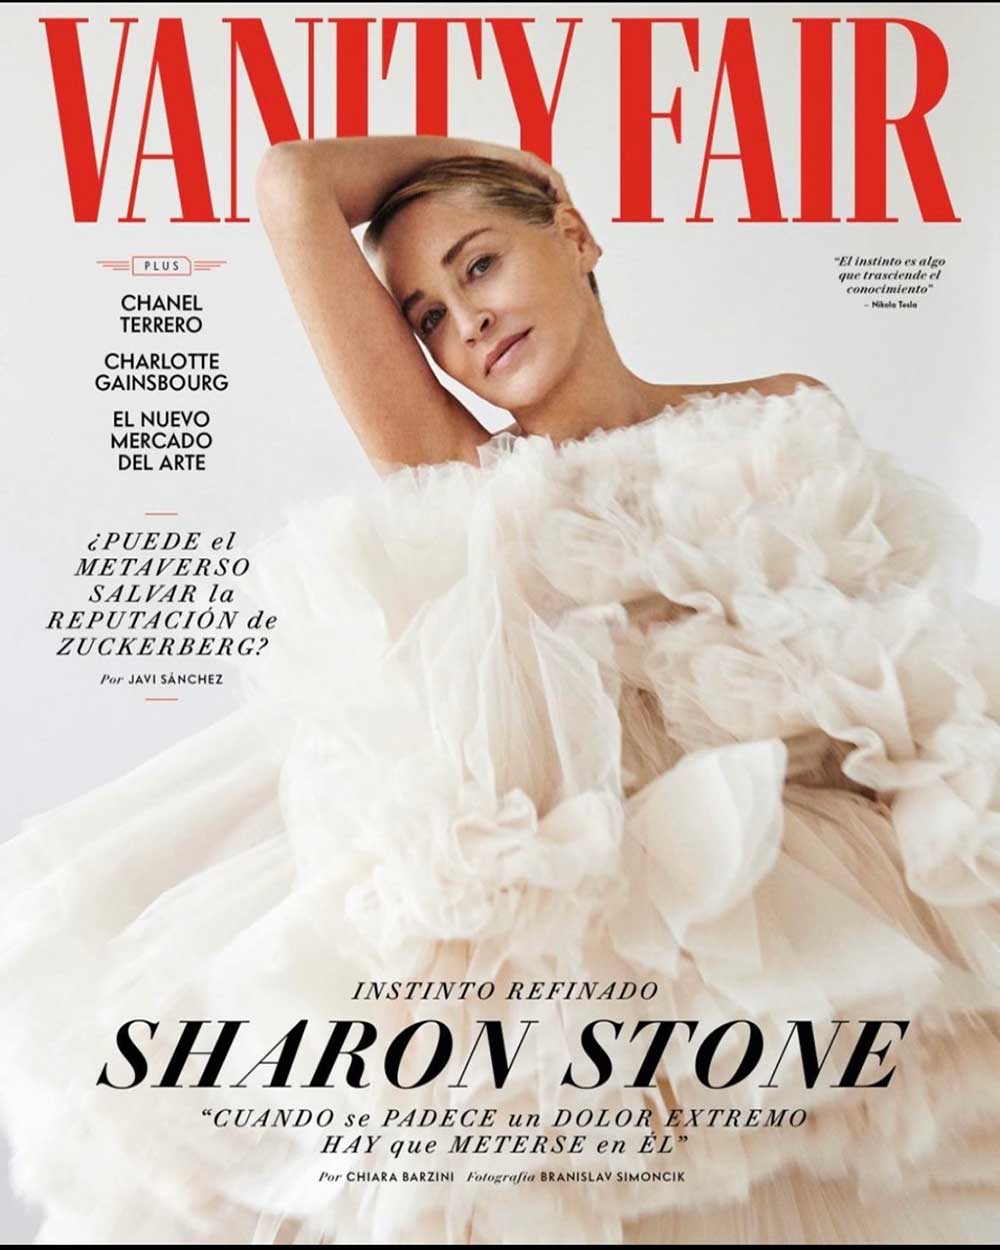 Krikor Jabotian - Sharon Stone - Vanity Fair Spain